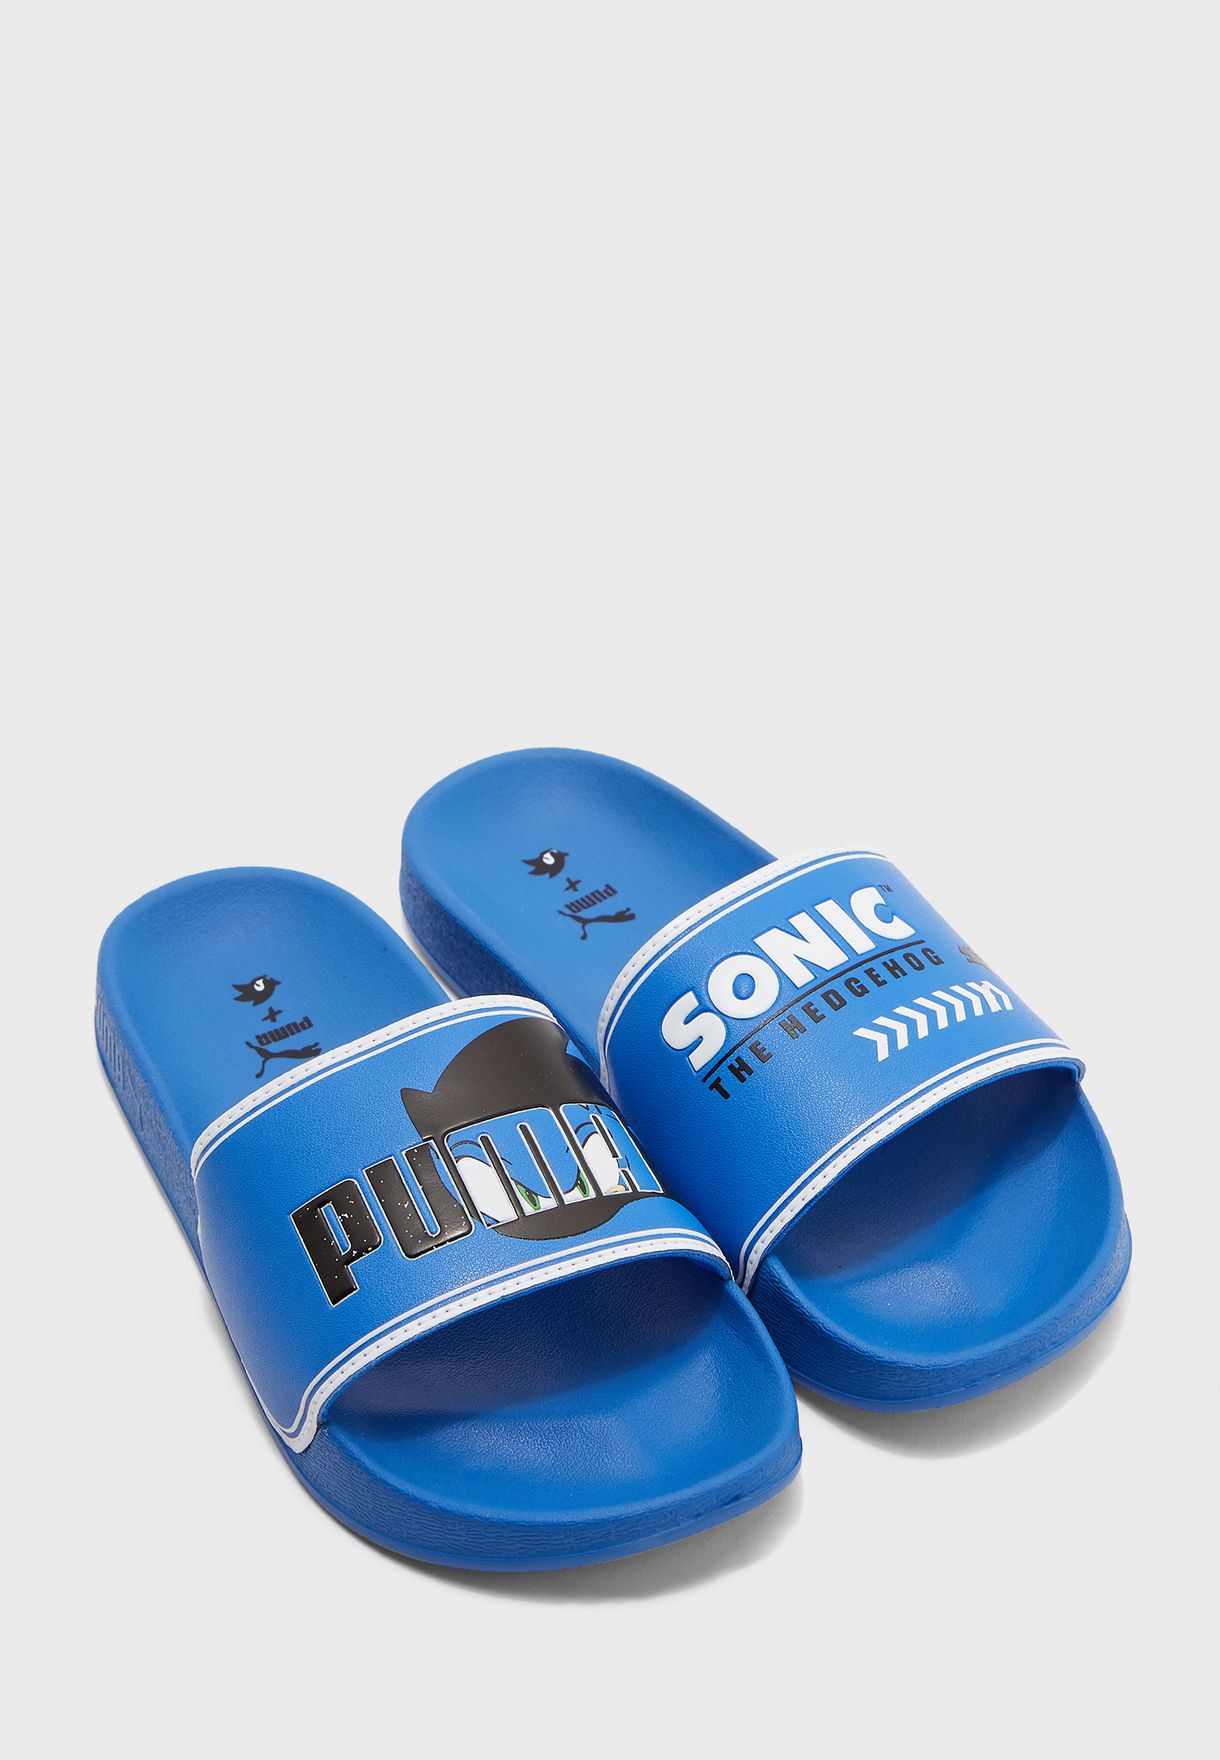 puma blue slide flip flop